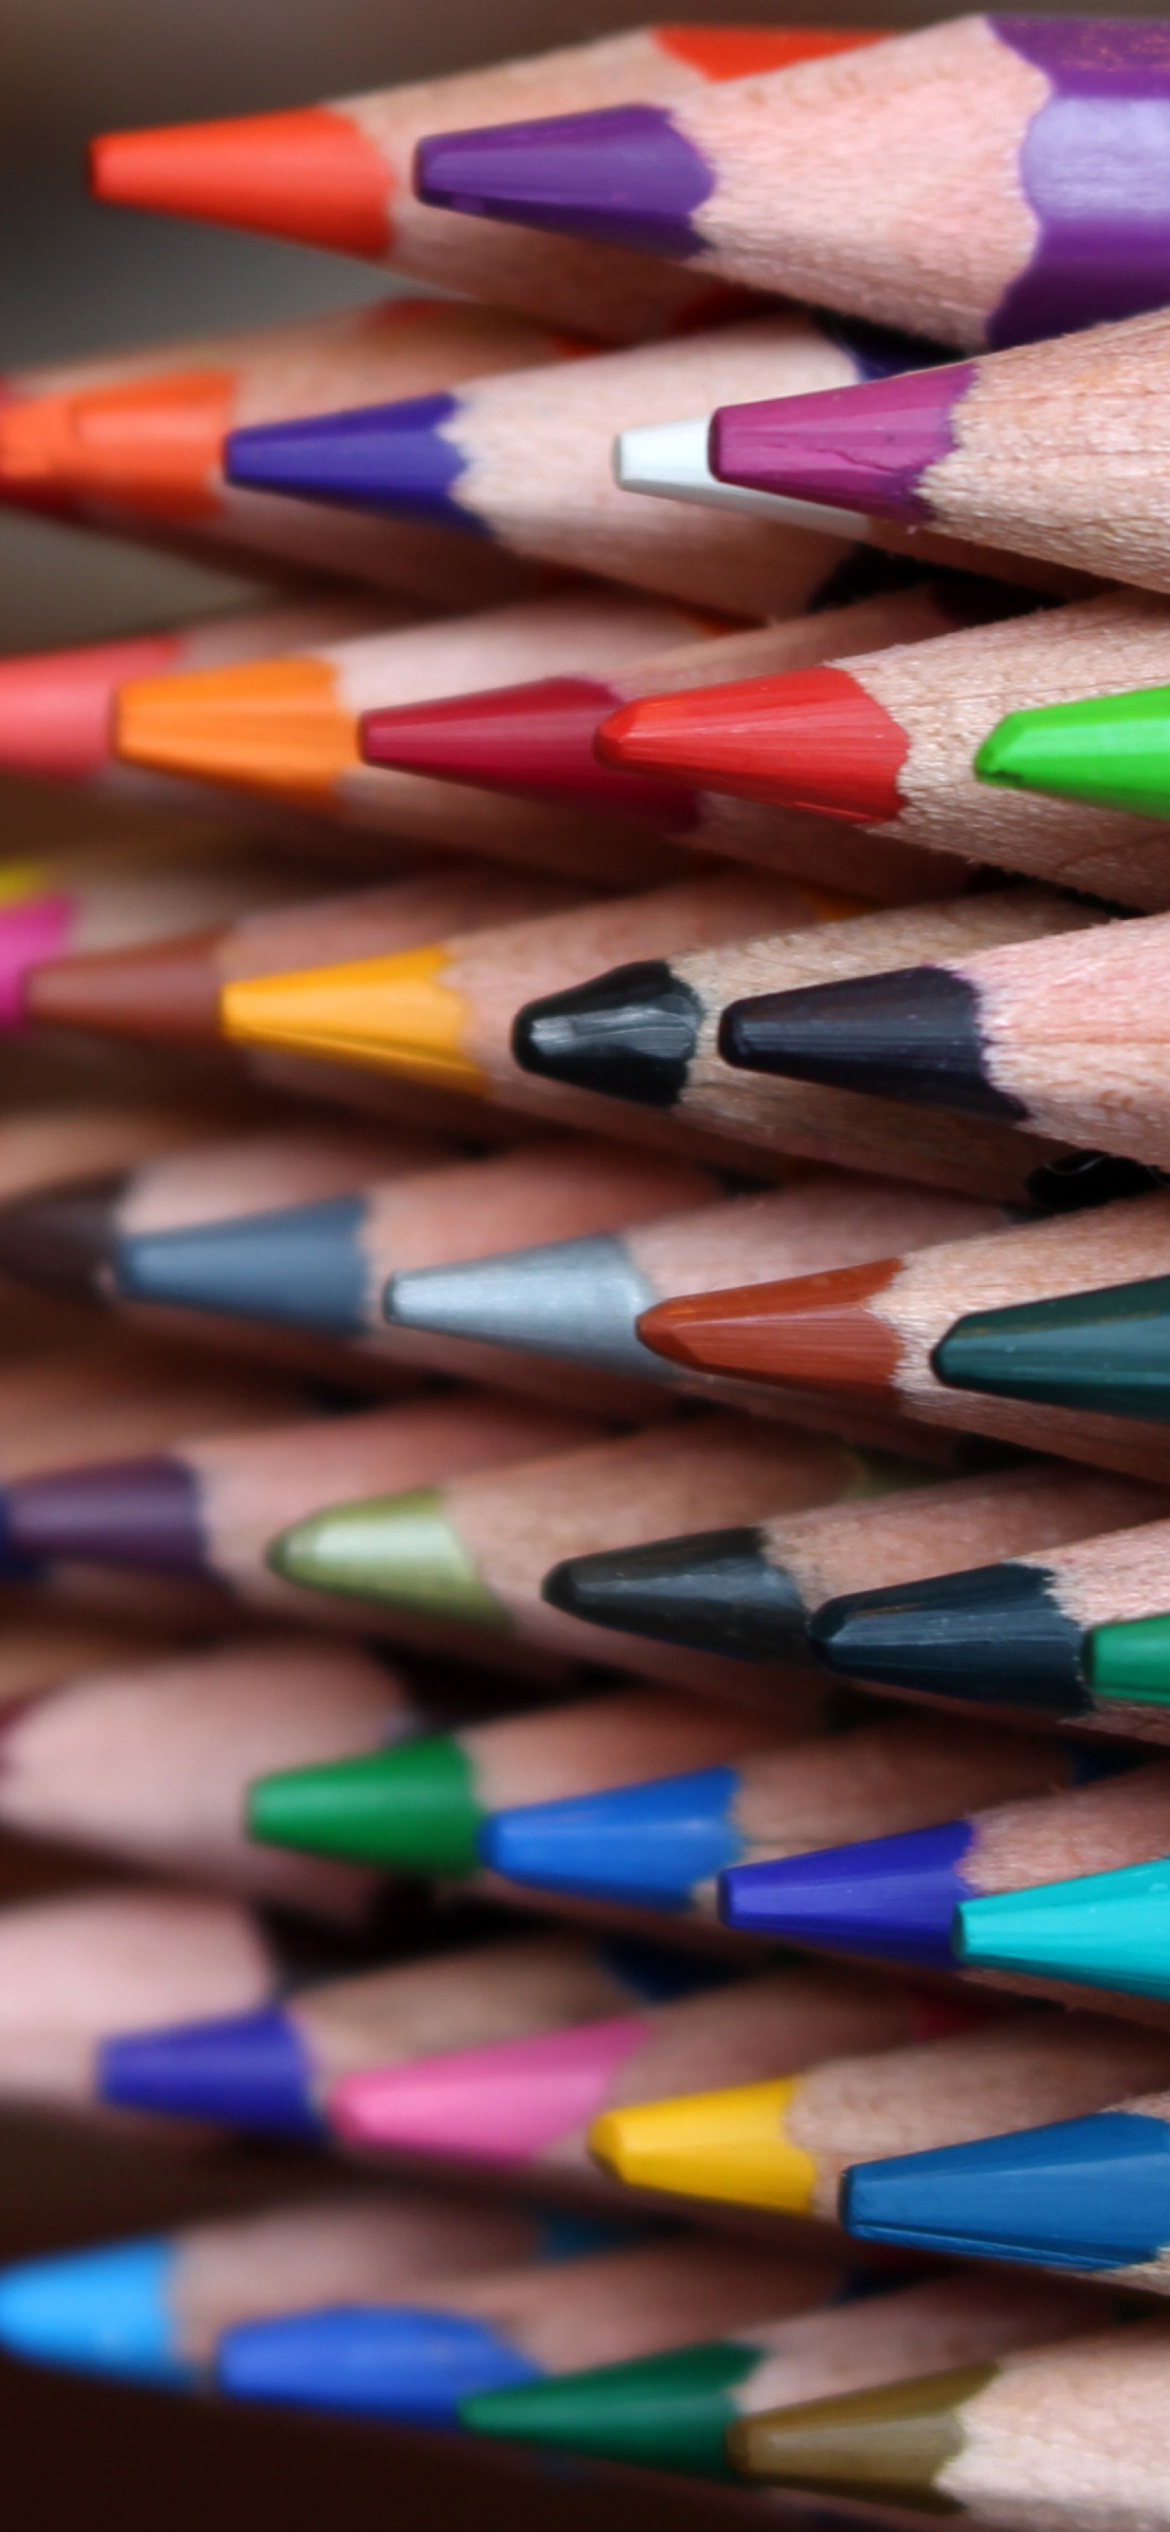 Das Crayola Colored Pencils Wallpaper 1170x2532